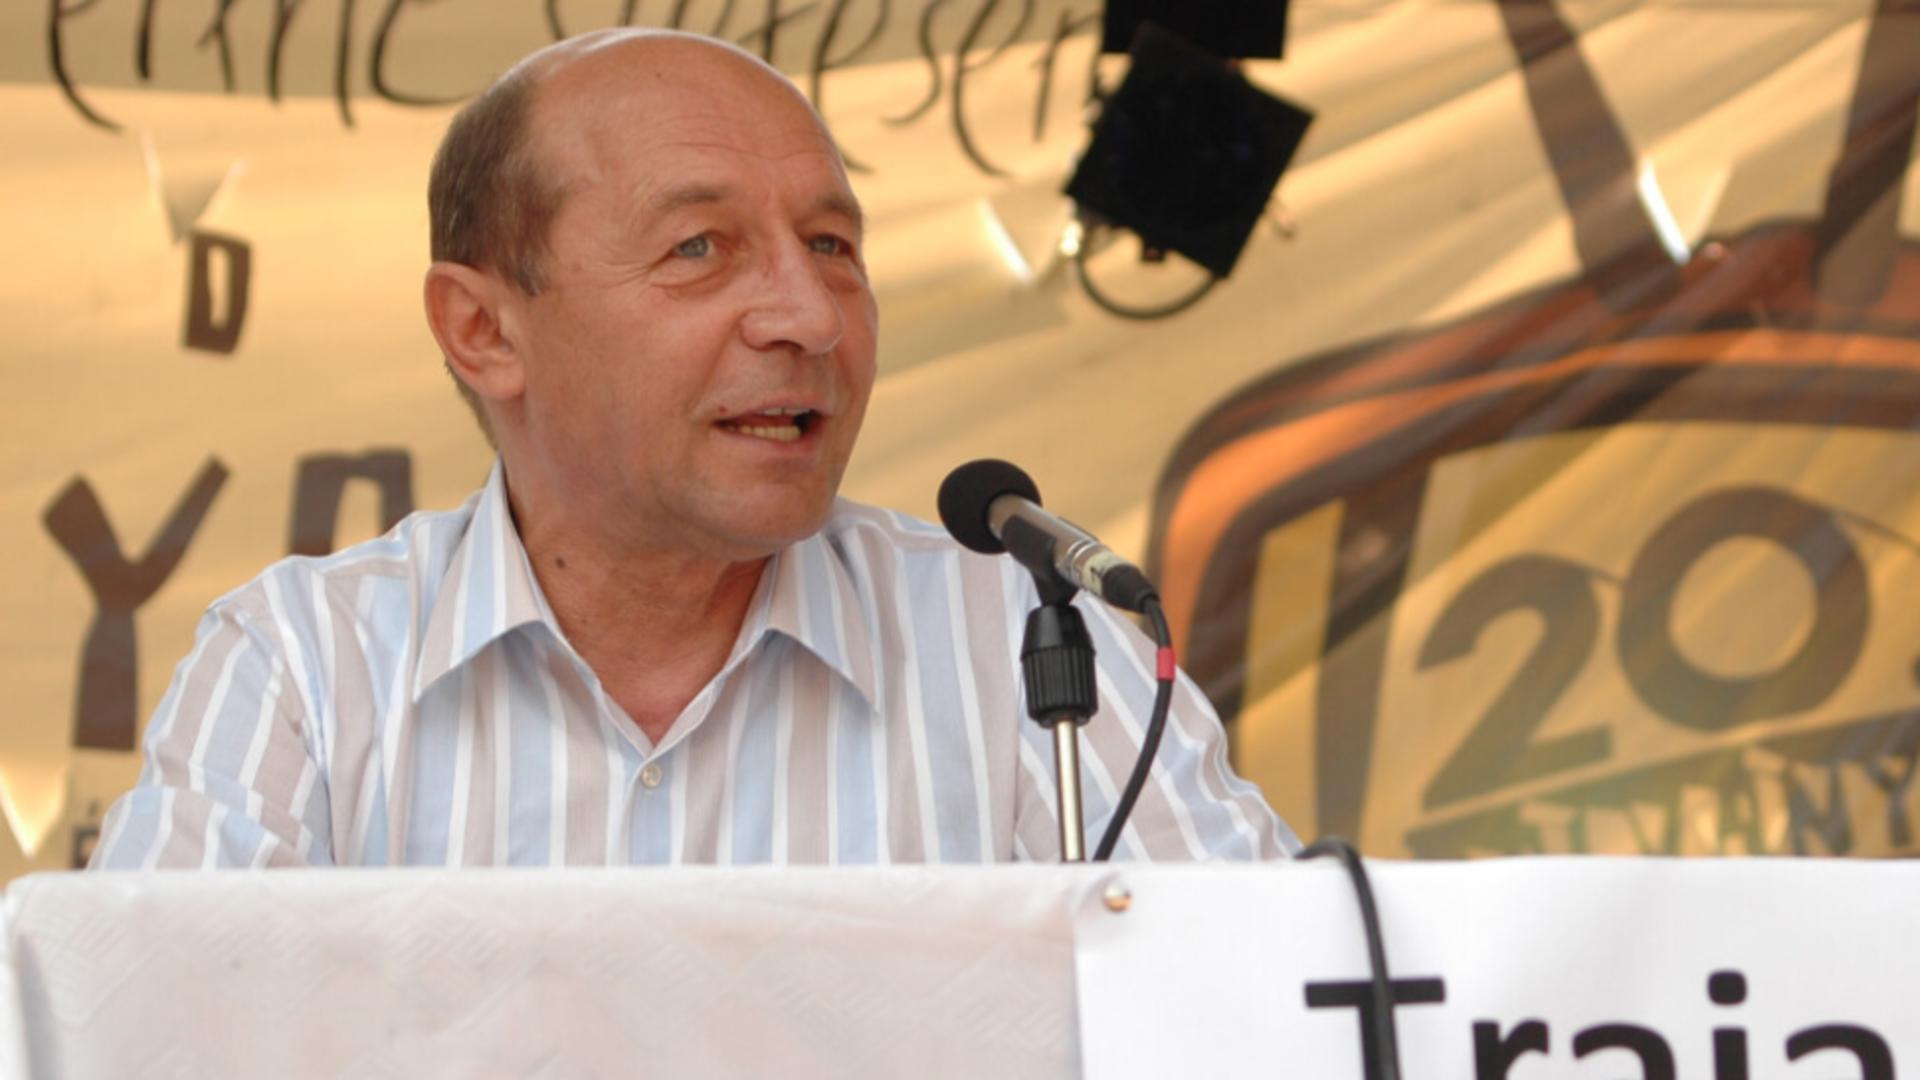 Medicii i-au pus în vedere lui Traian Băsescu să-și pregătească un aparat de oxigen acasă – SURSE